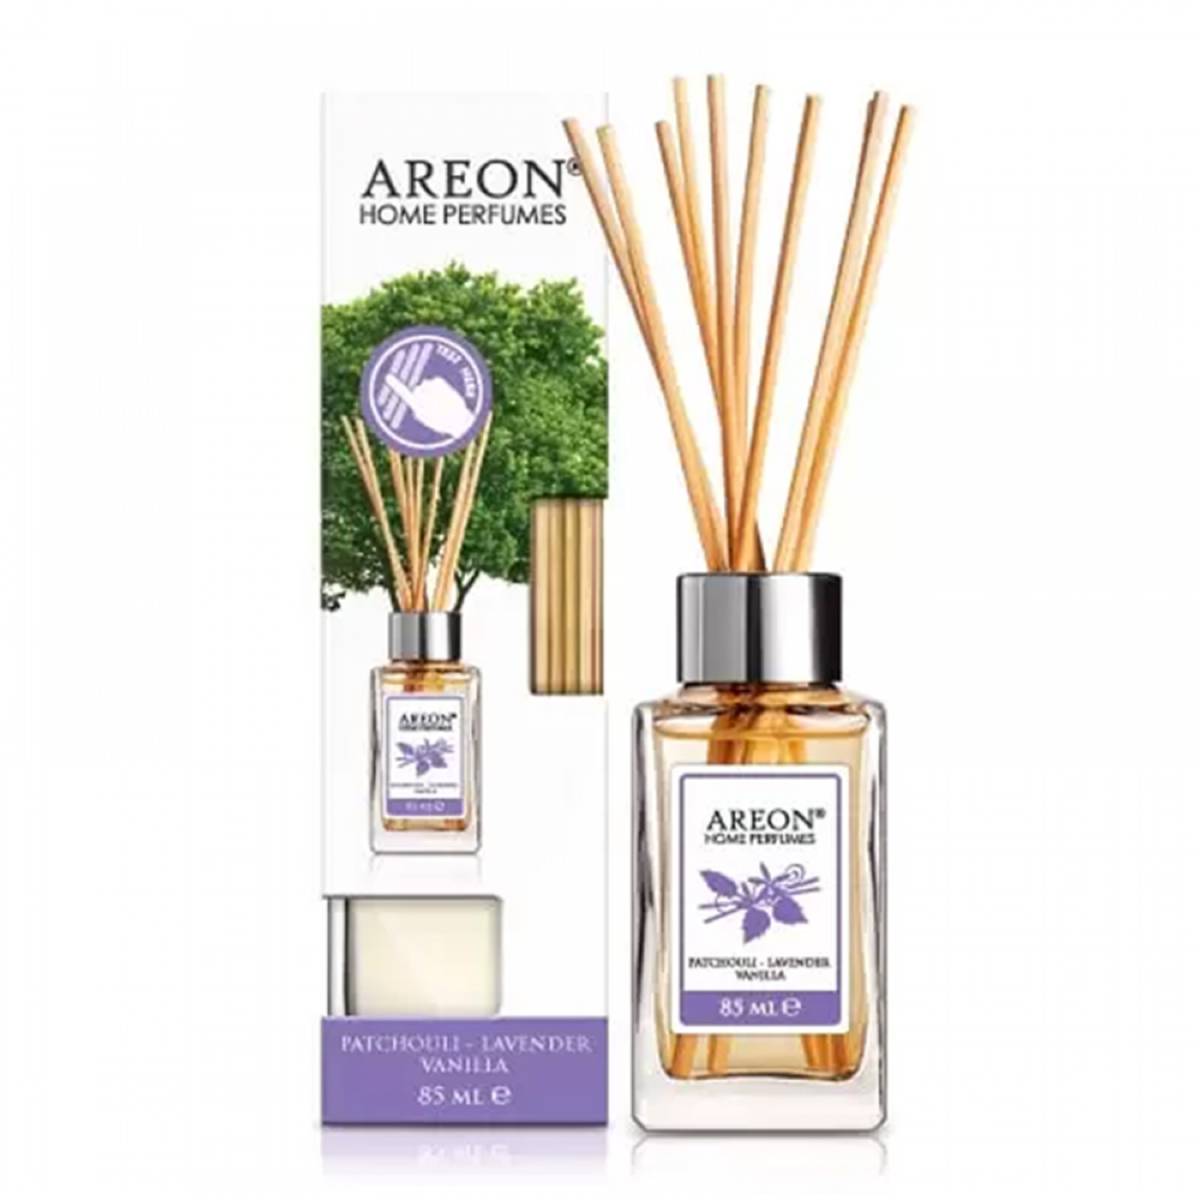 Аромадиффузор Areon Home Perfume Patchouli Lavender Vanilla 85мл 3800034960465 Areon